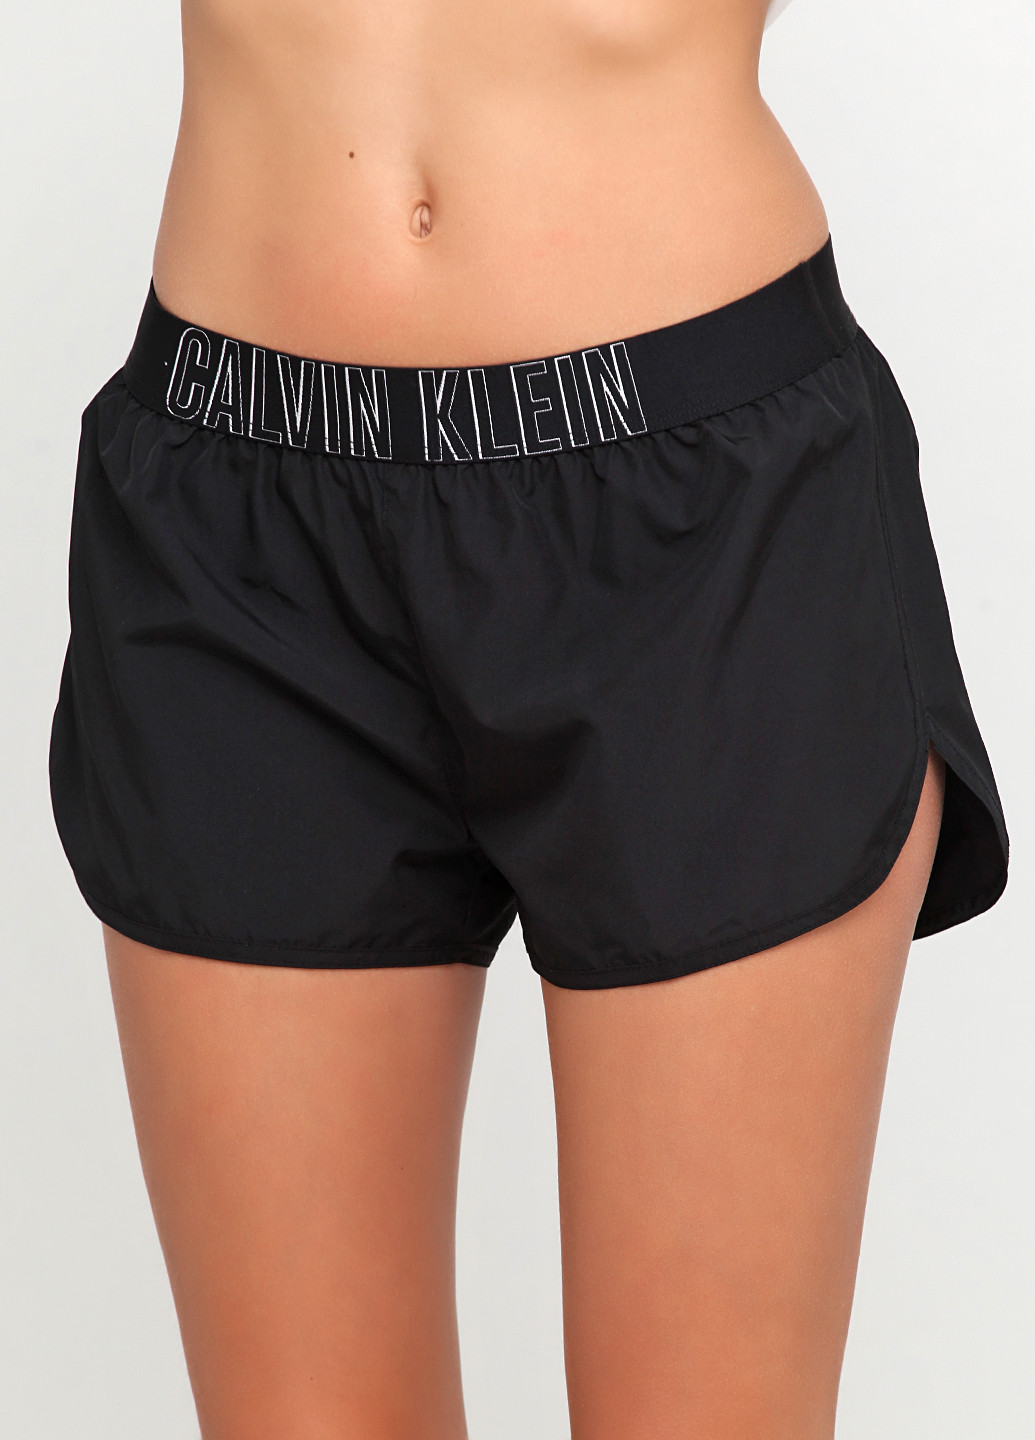 Шорты Calvin Klein логотипы чёрные спортивные